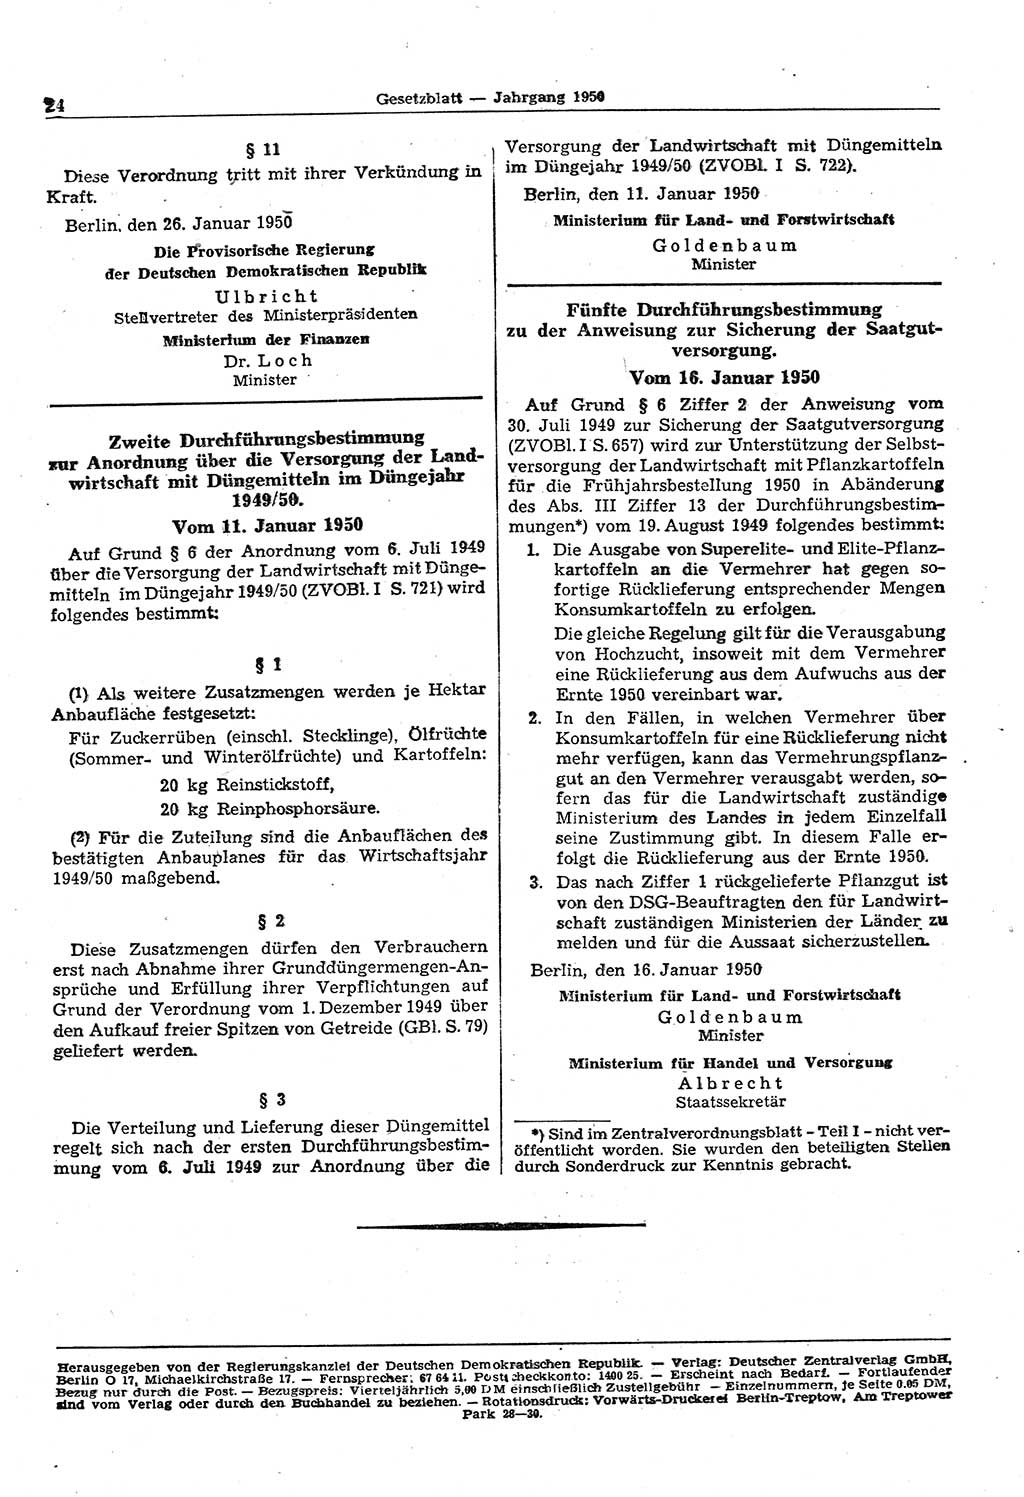 Gesetzblatt (GBl.) der Deutschen Demokratischen Republik (DDR) 1950, Seite 24 (GBl. DDR 1950, S. 24)